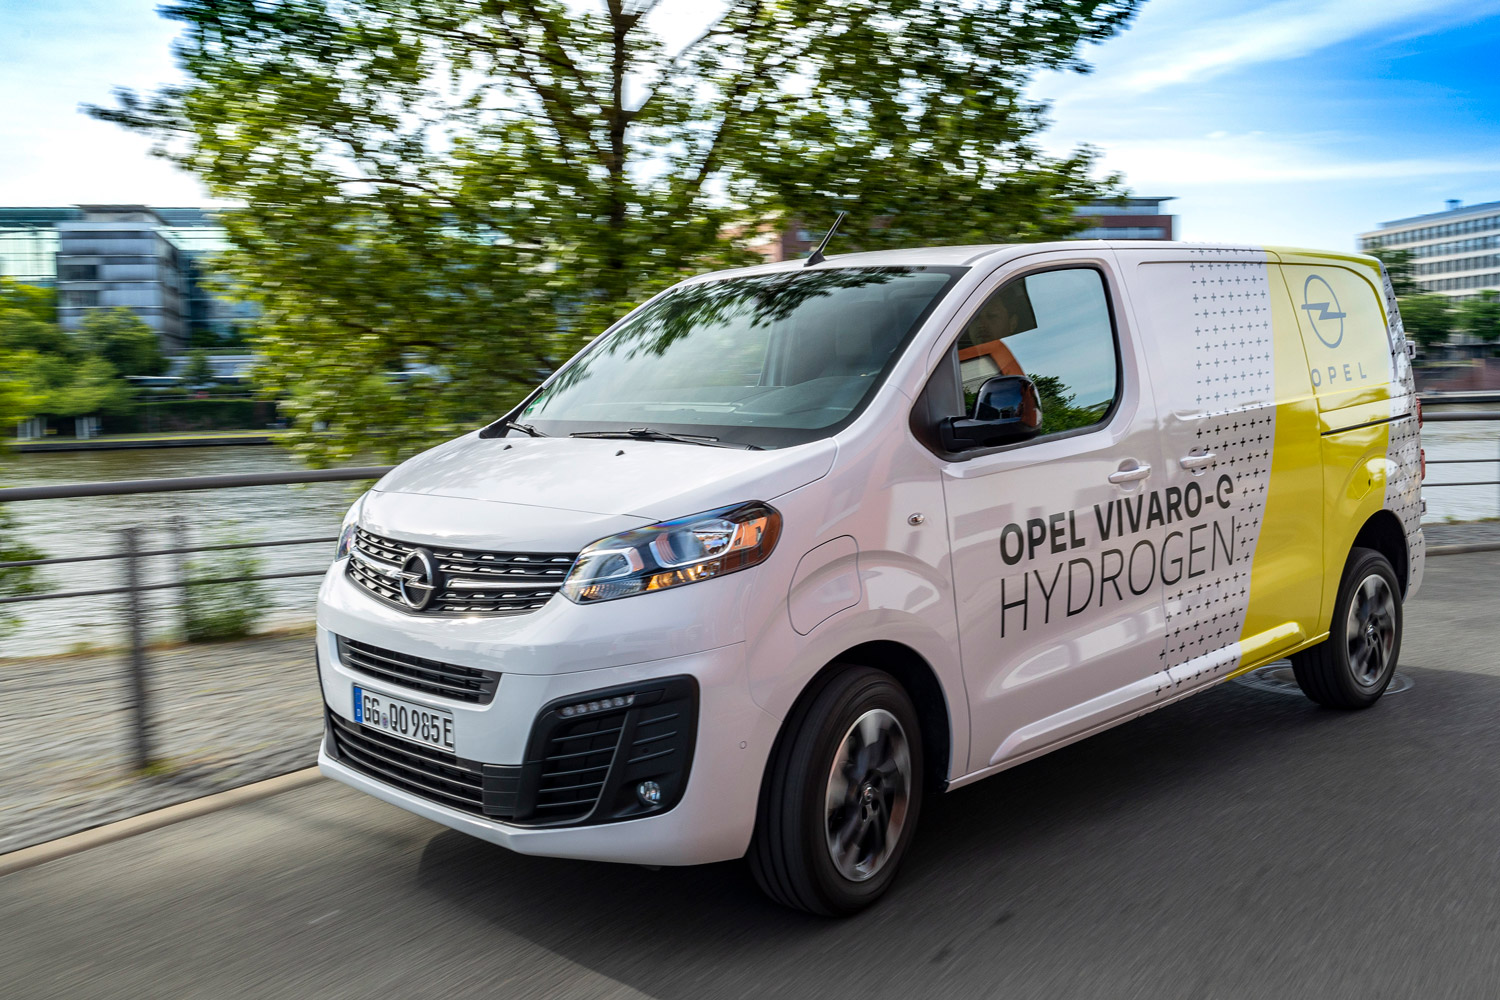 Opel Vivaro-e Hydrogen, een van de busjes op waterstof